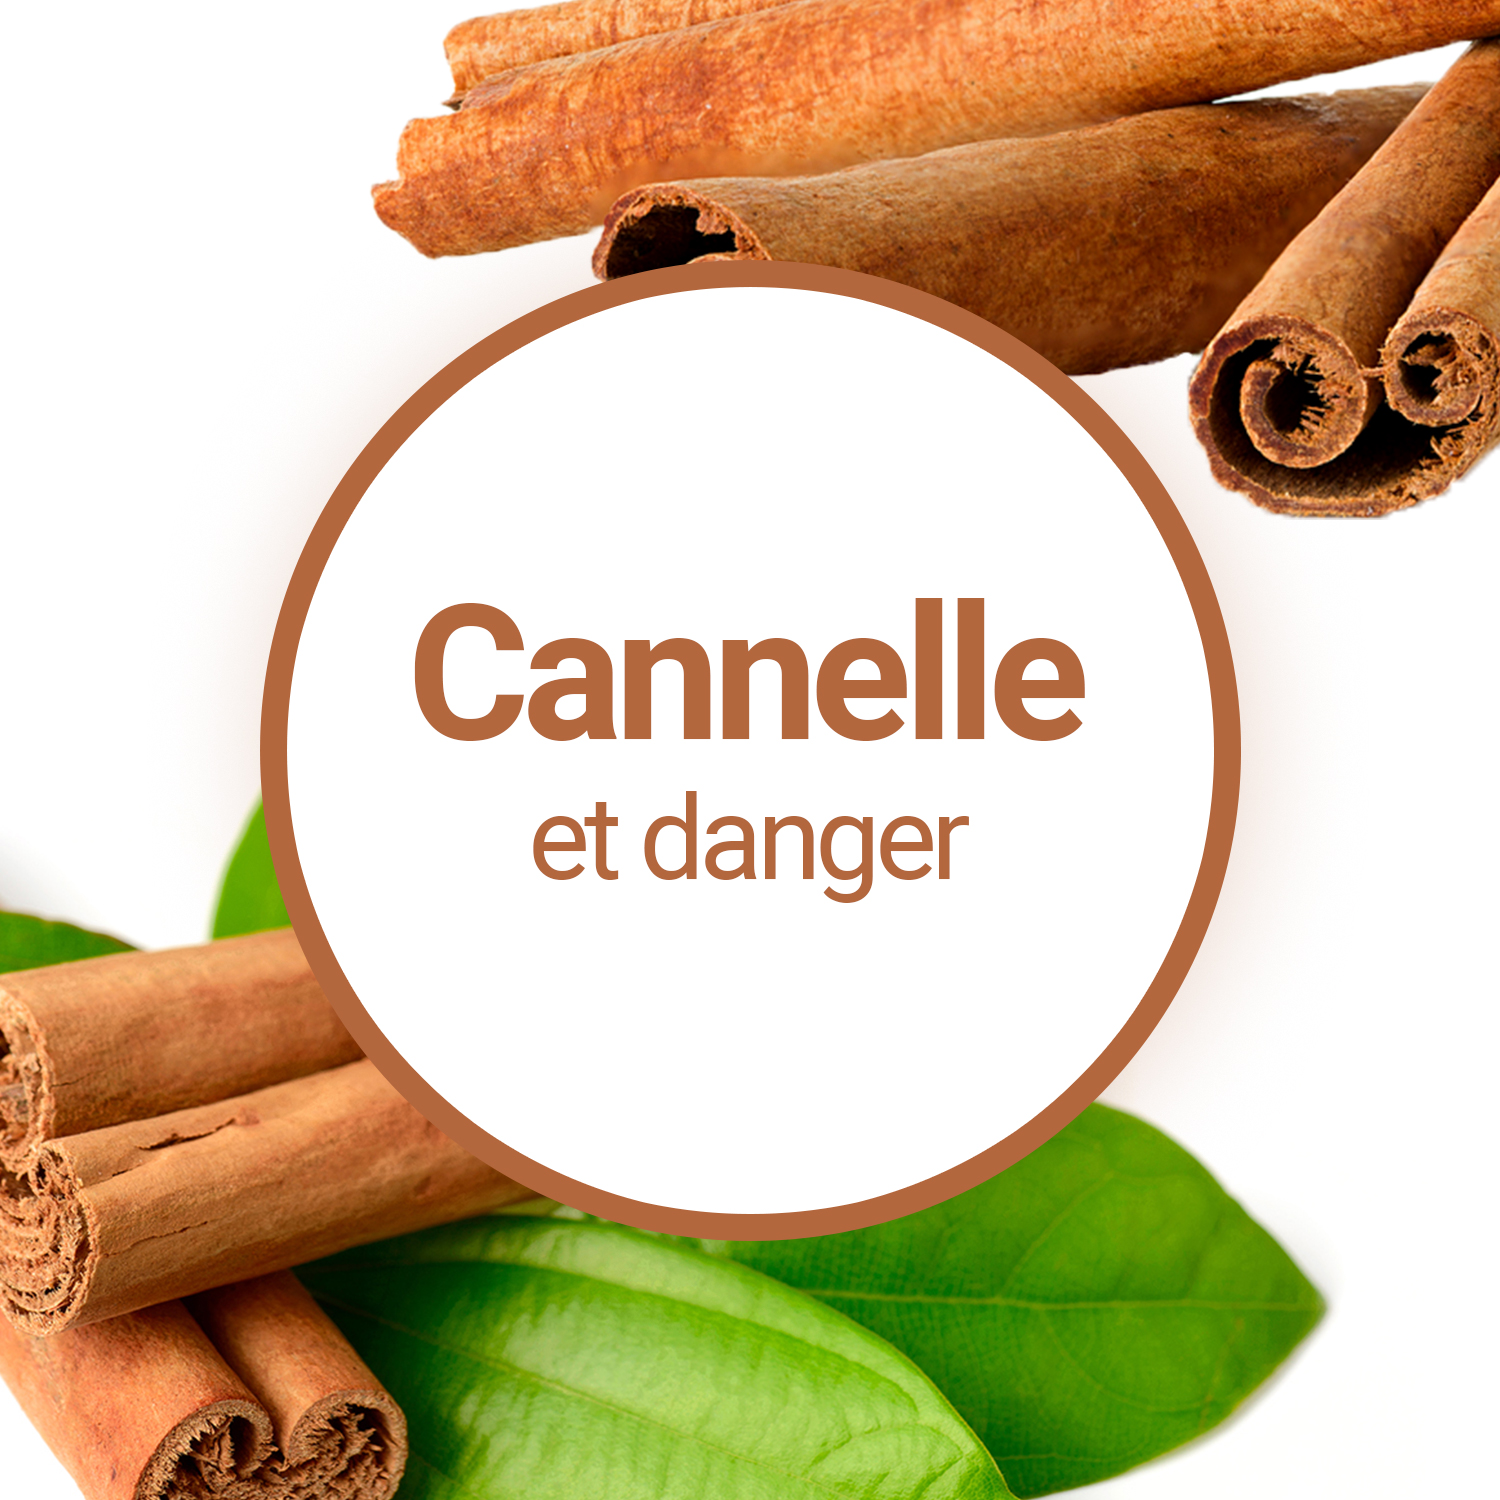 La cannelle - Tout sur la cannelle (Cinnamomum zeylanicum), ses